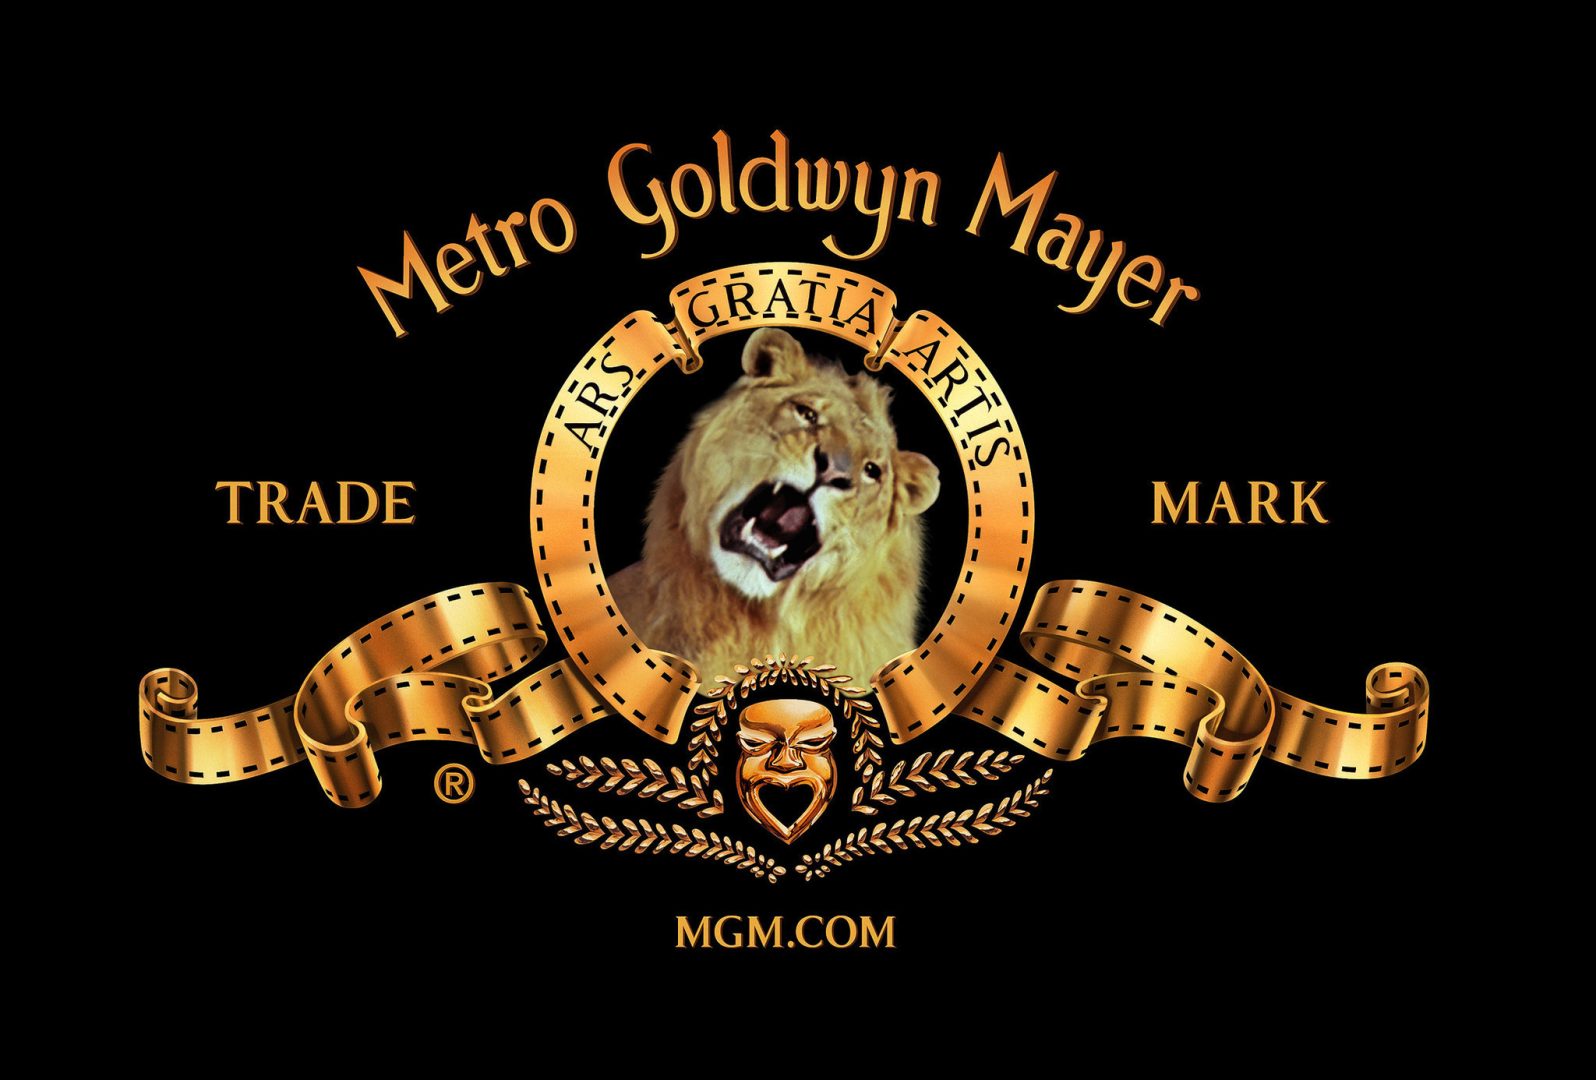 metro-goldwyn-mayer - FRPNET